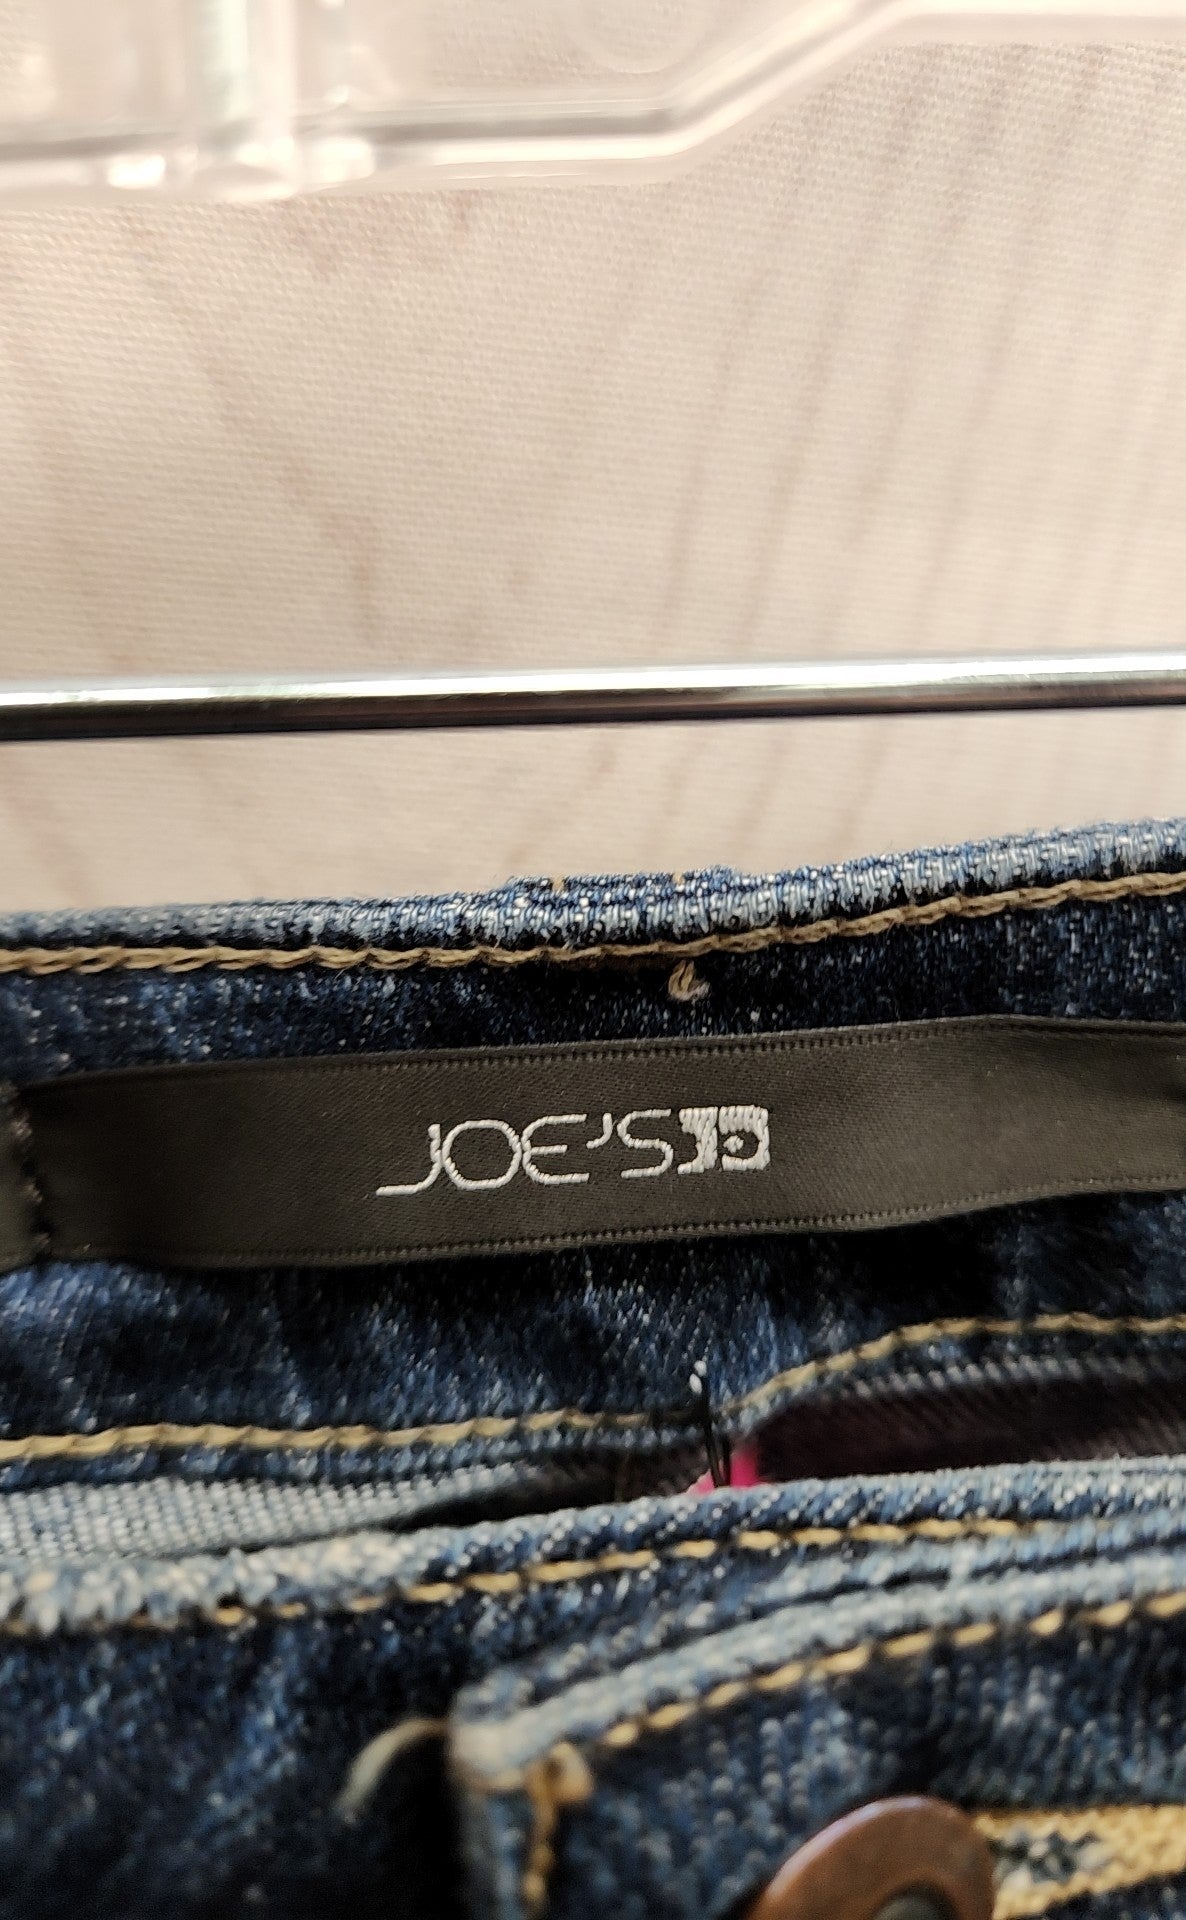 Joe's Women's Size 29 (7-8) THe Skinny Blue Jeans